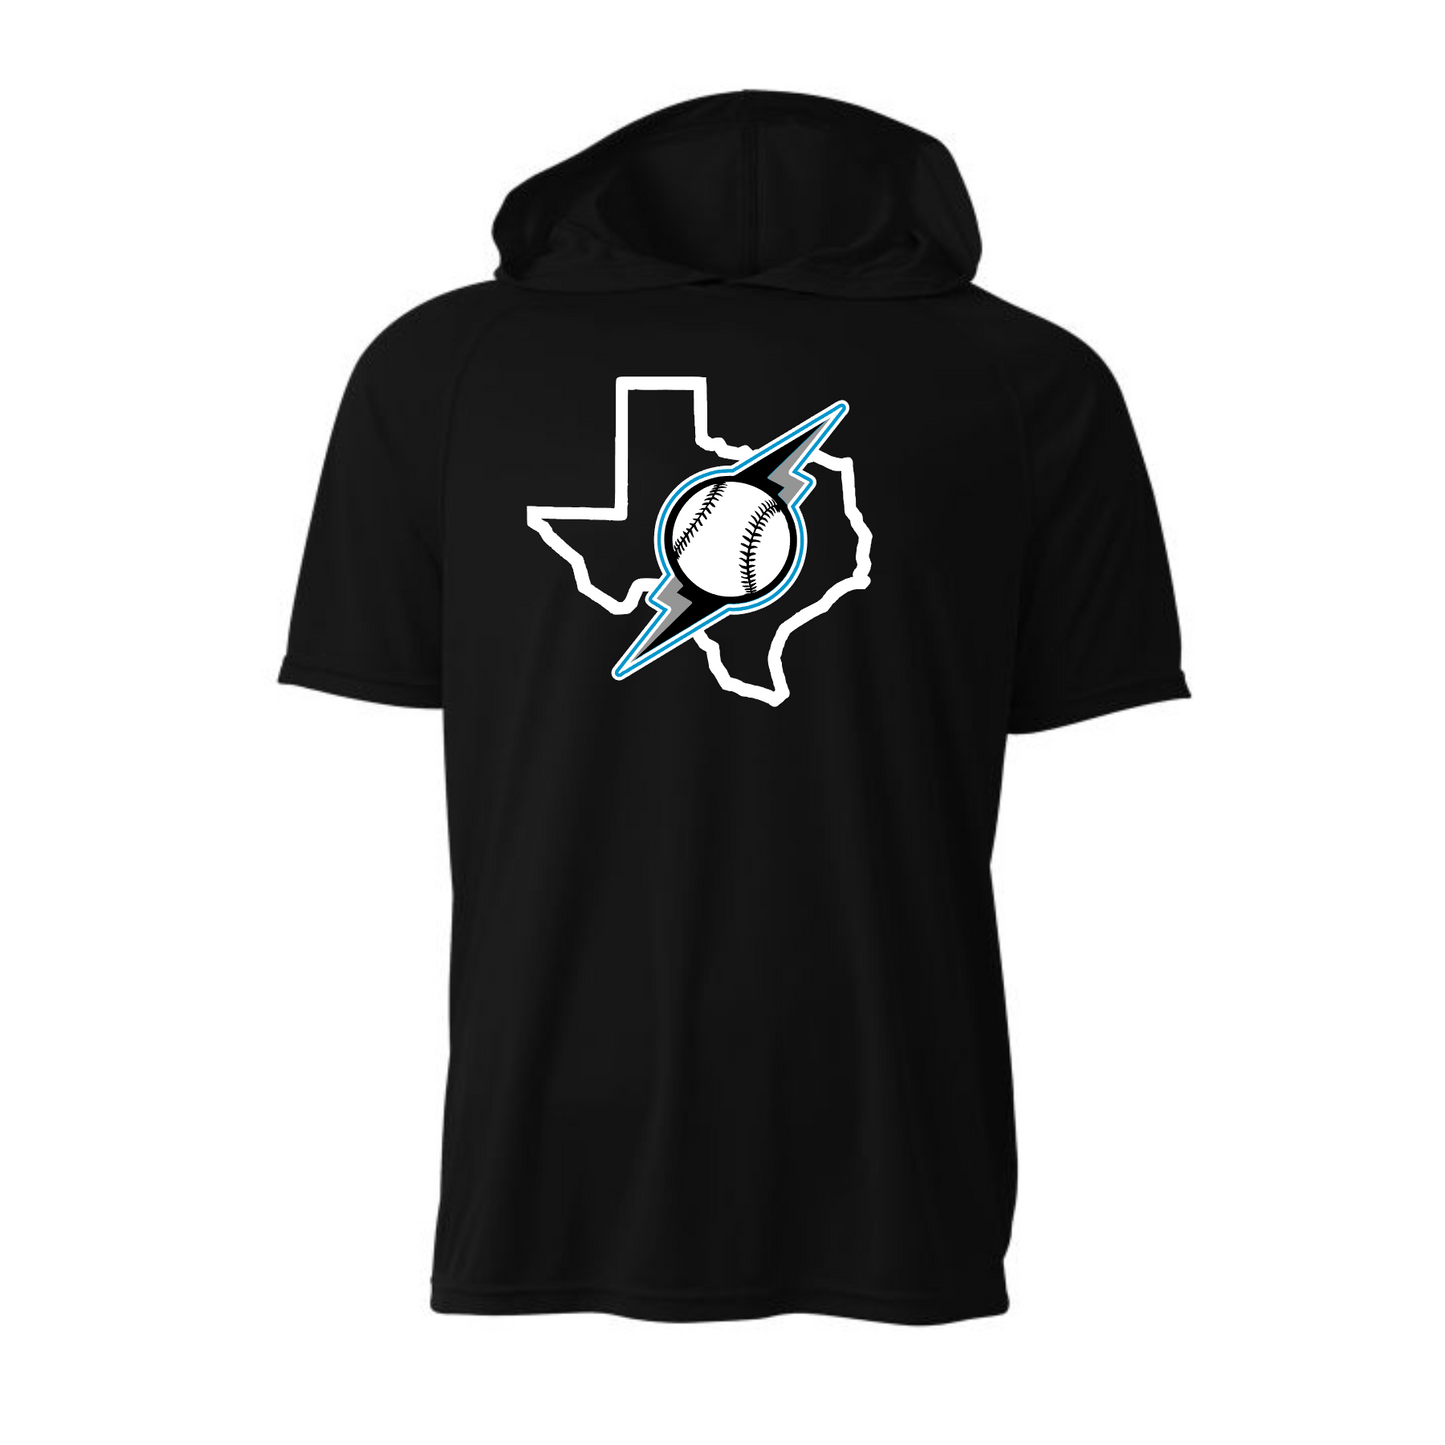 Storm Texas Softball Tee, Black Storm Softball Shirt, Storm Black Tshirt